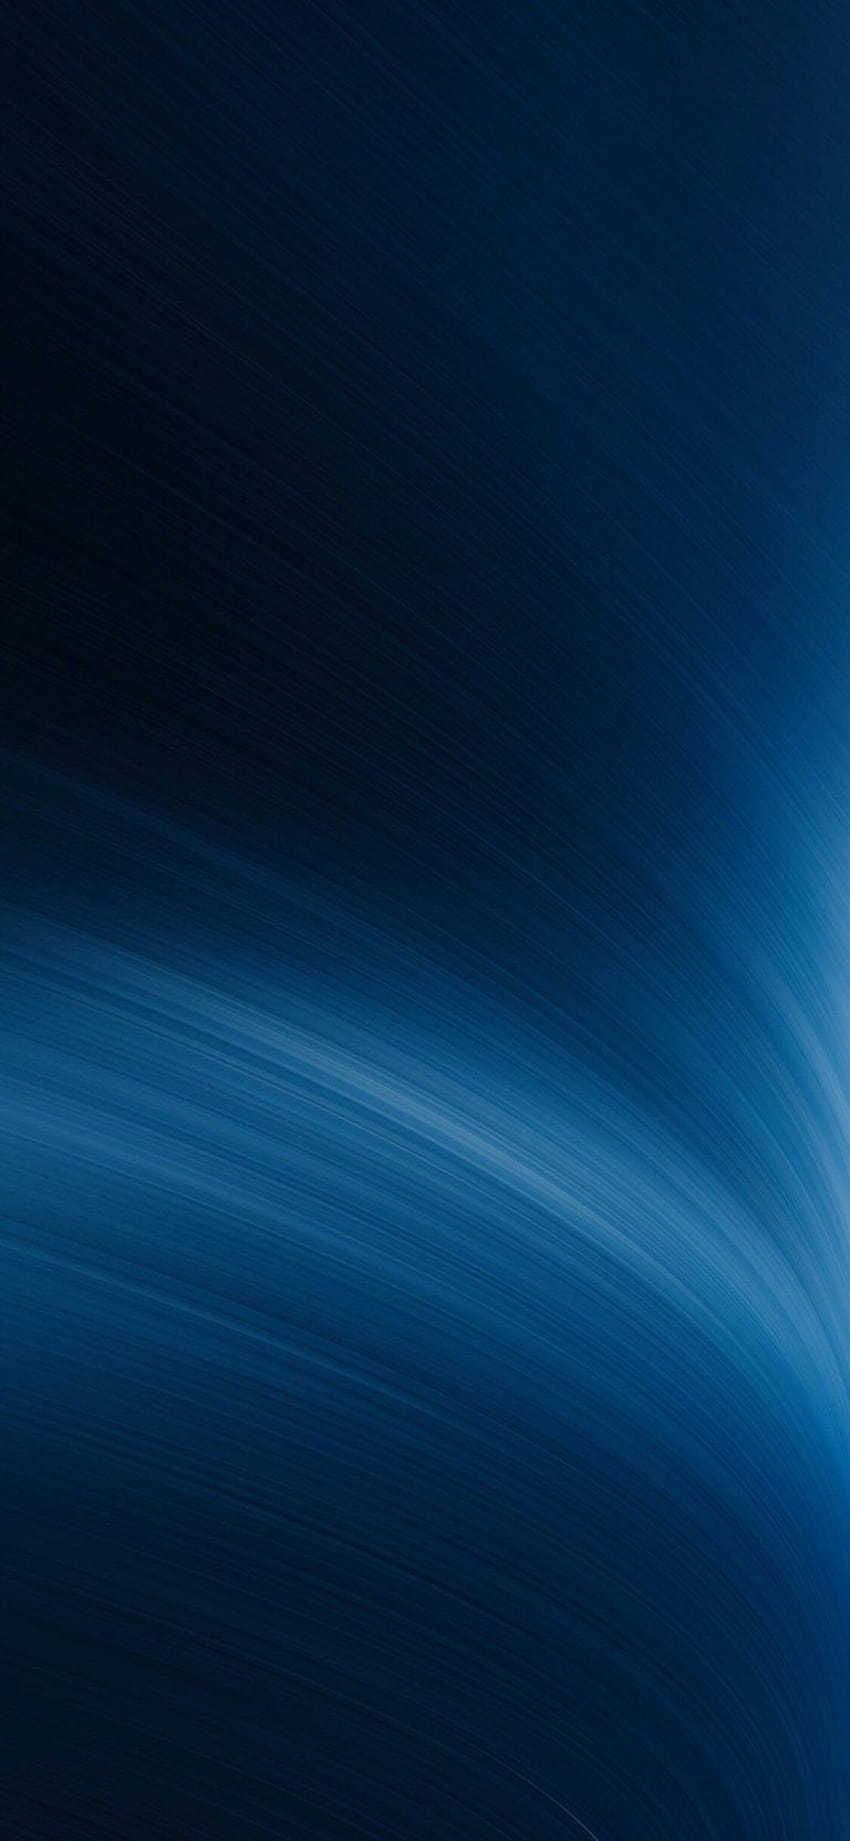 iPhone abstracto azul oscuro, teléfono azul oscuro fondo de pantalla del teléfono